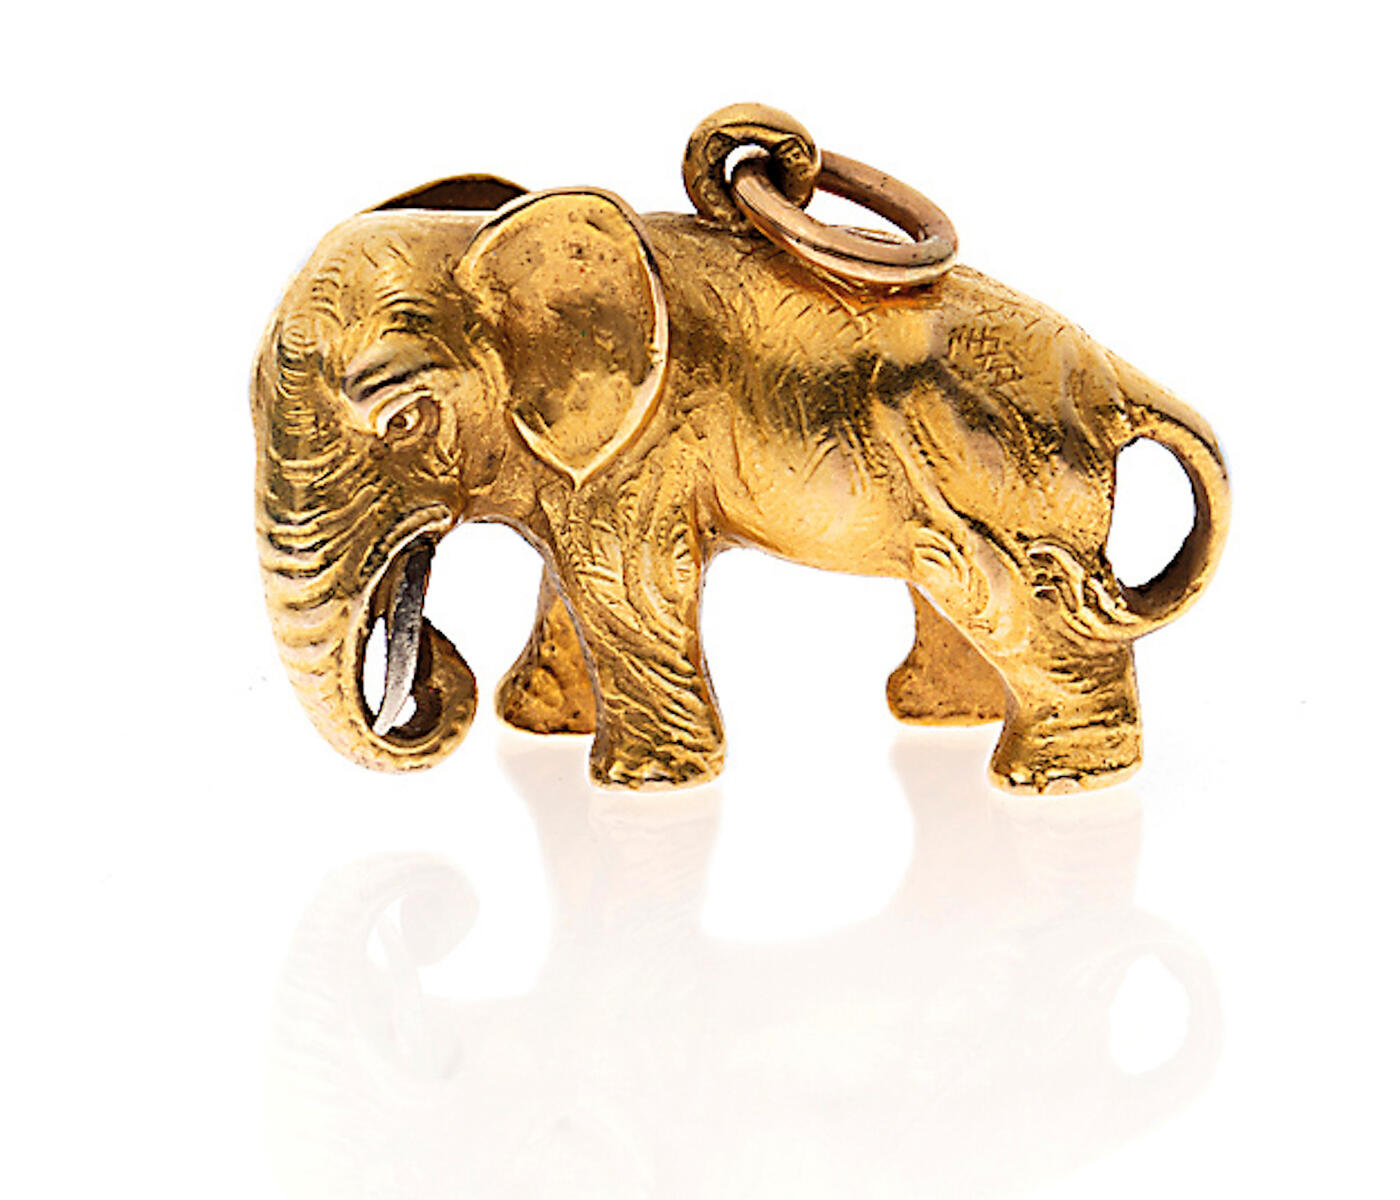 A Fabergé Gold Miniature Pendant